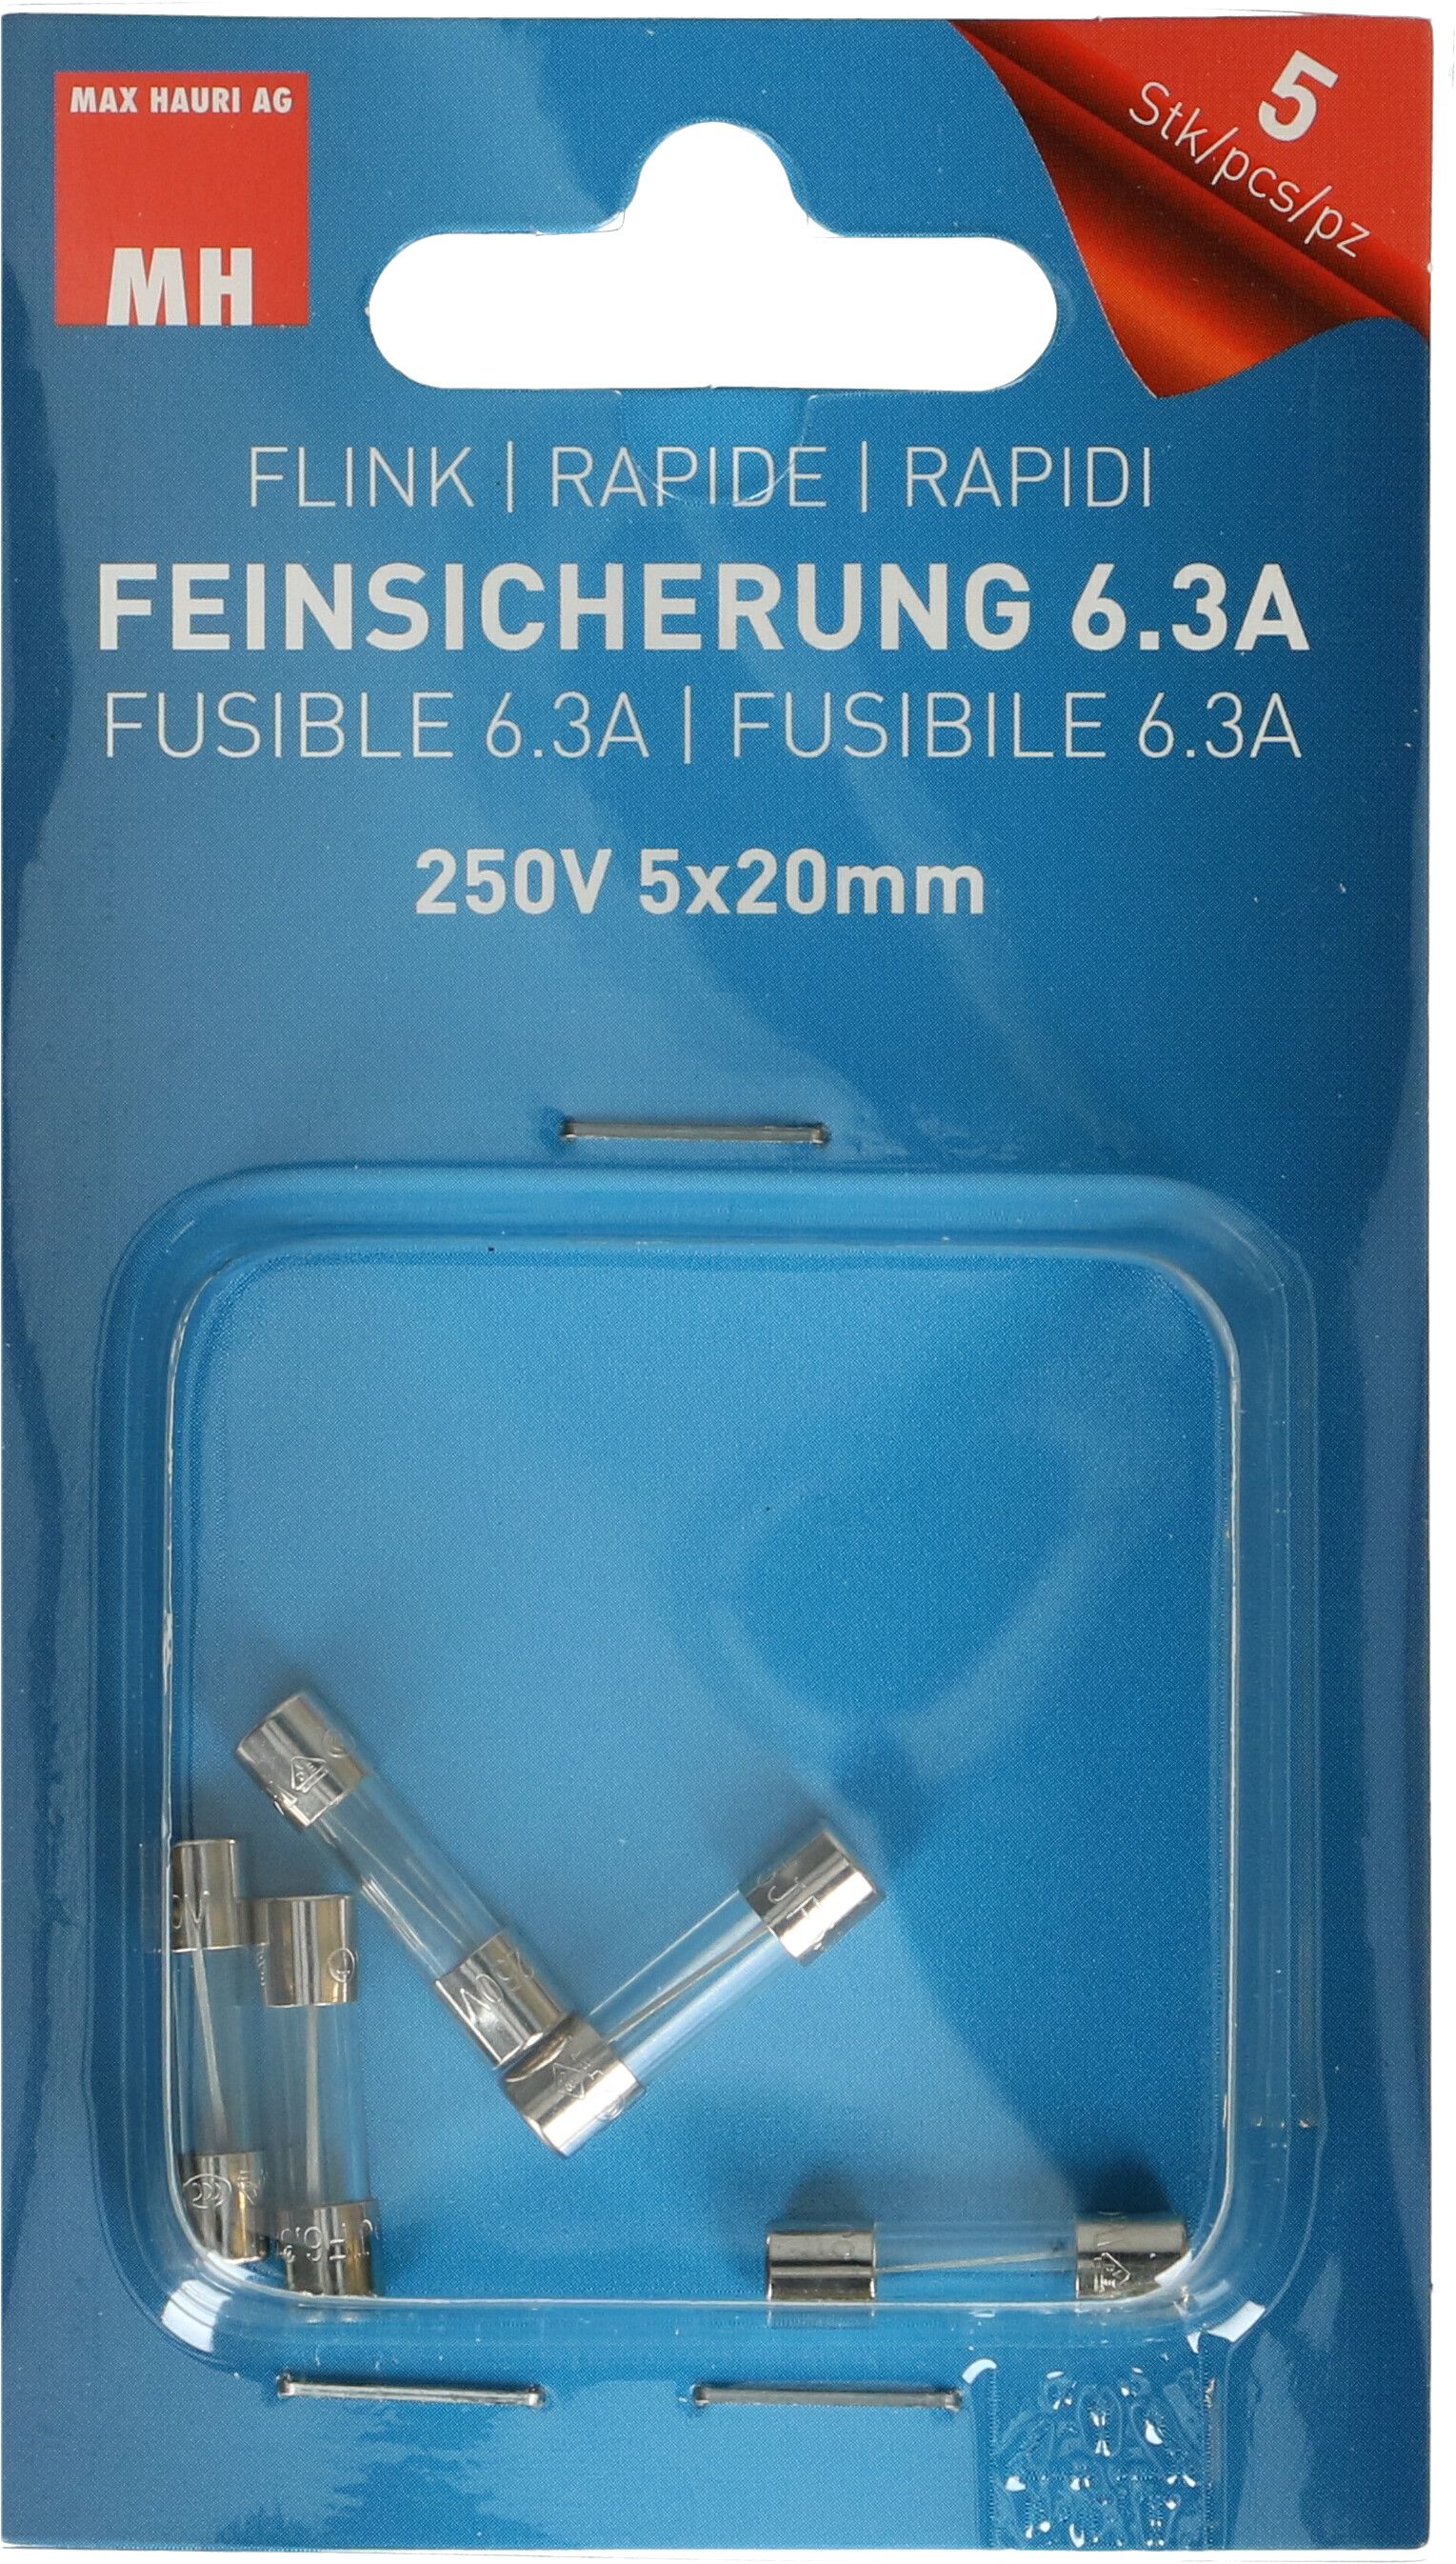 Feinsicherung 6.3A flink 250V 5x20mm / 5 Stück